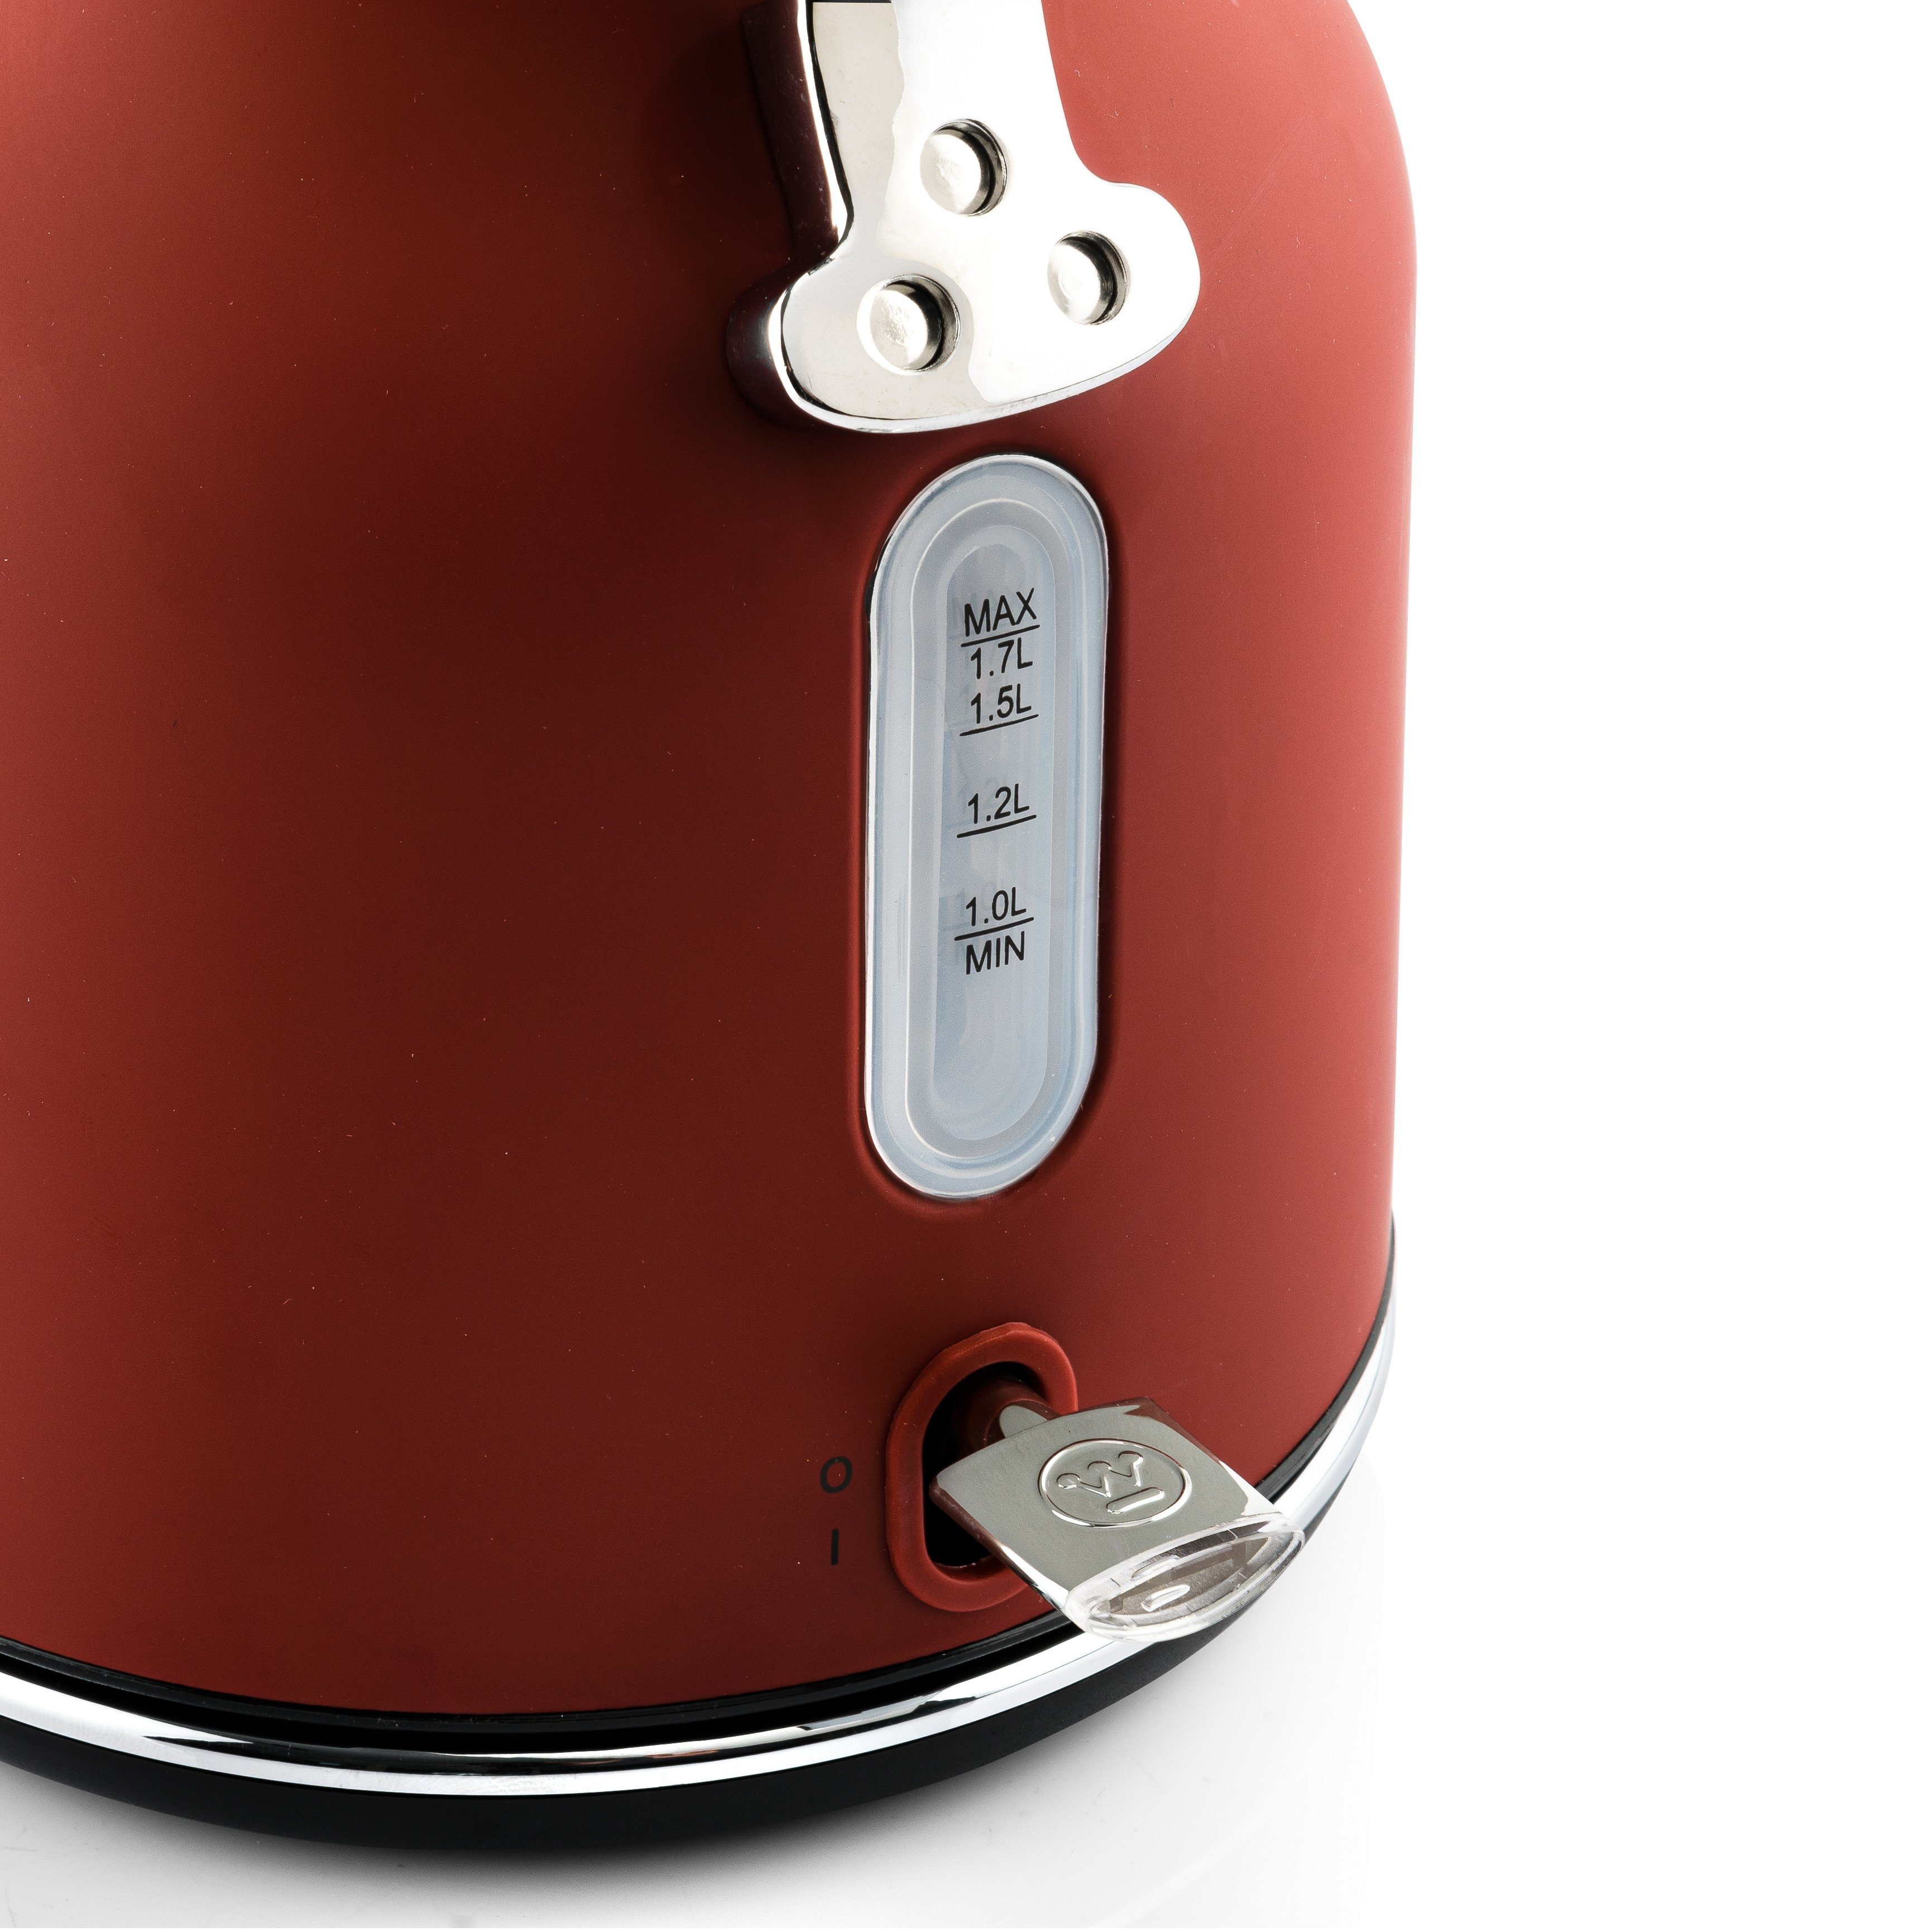 Westinghouse Toaster Retro Früstücksset, 4 kurze 1,7 Schlitze, rot W, Wasserkocher 4 für Scheiben, L 1,5 1750 Standmixer Volumen& L